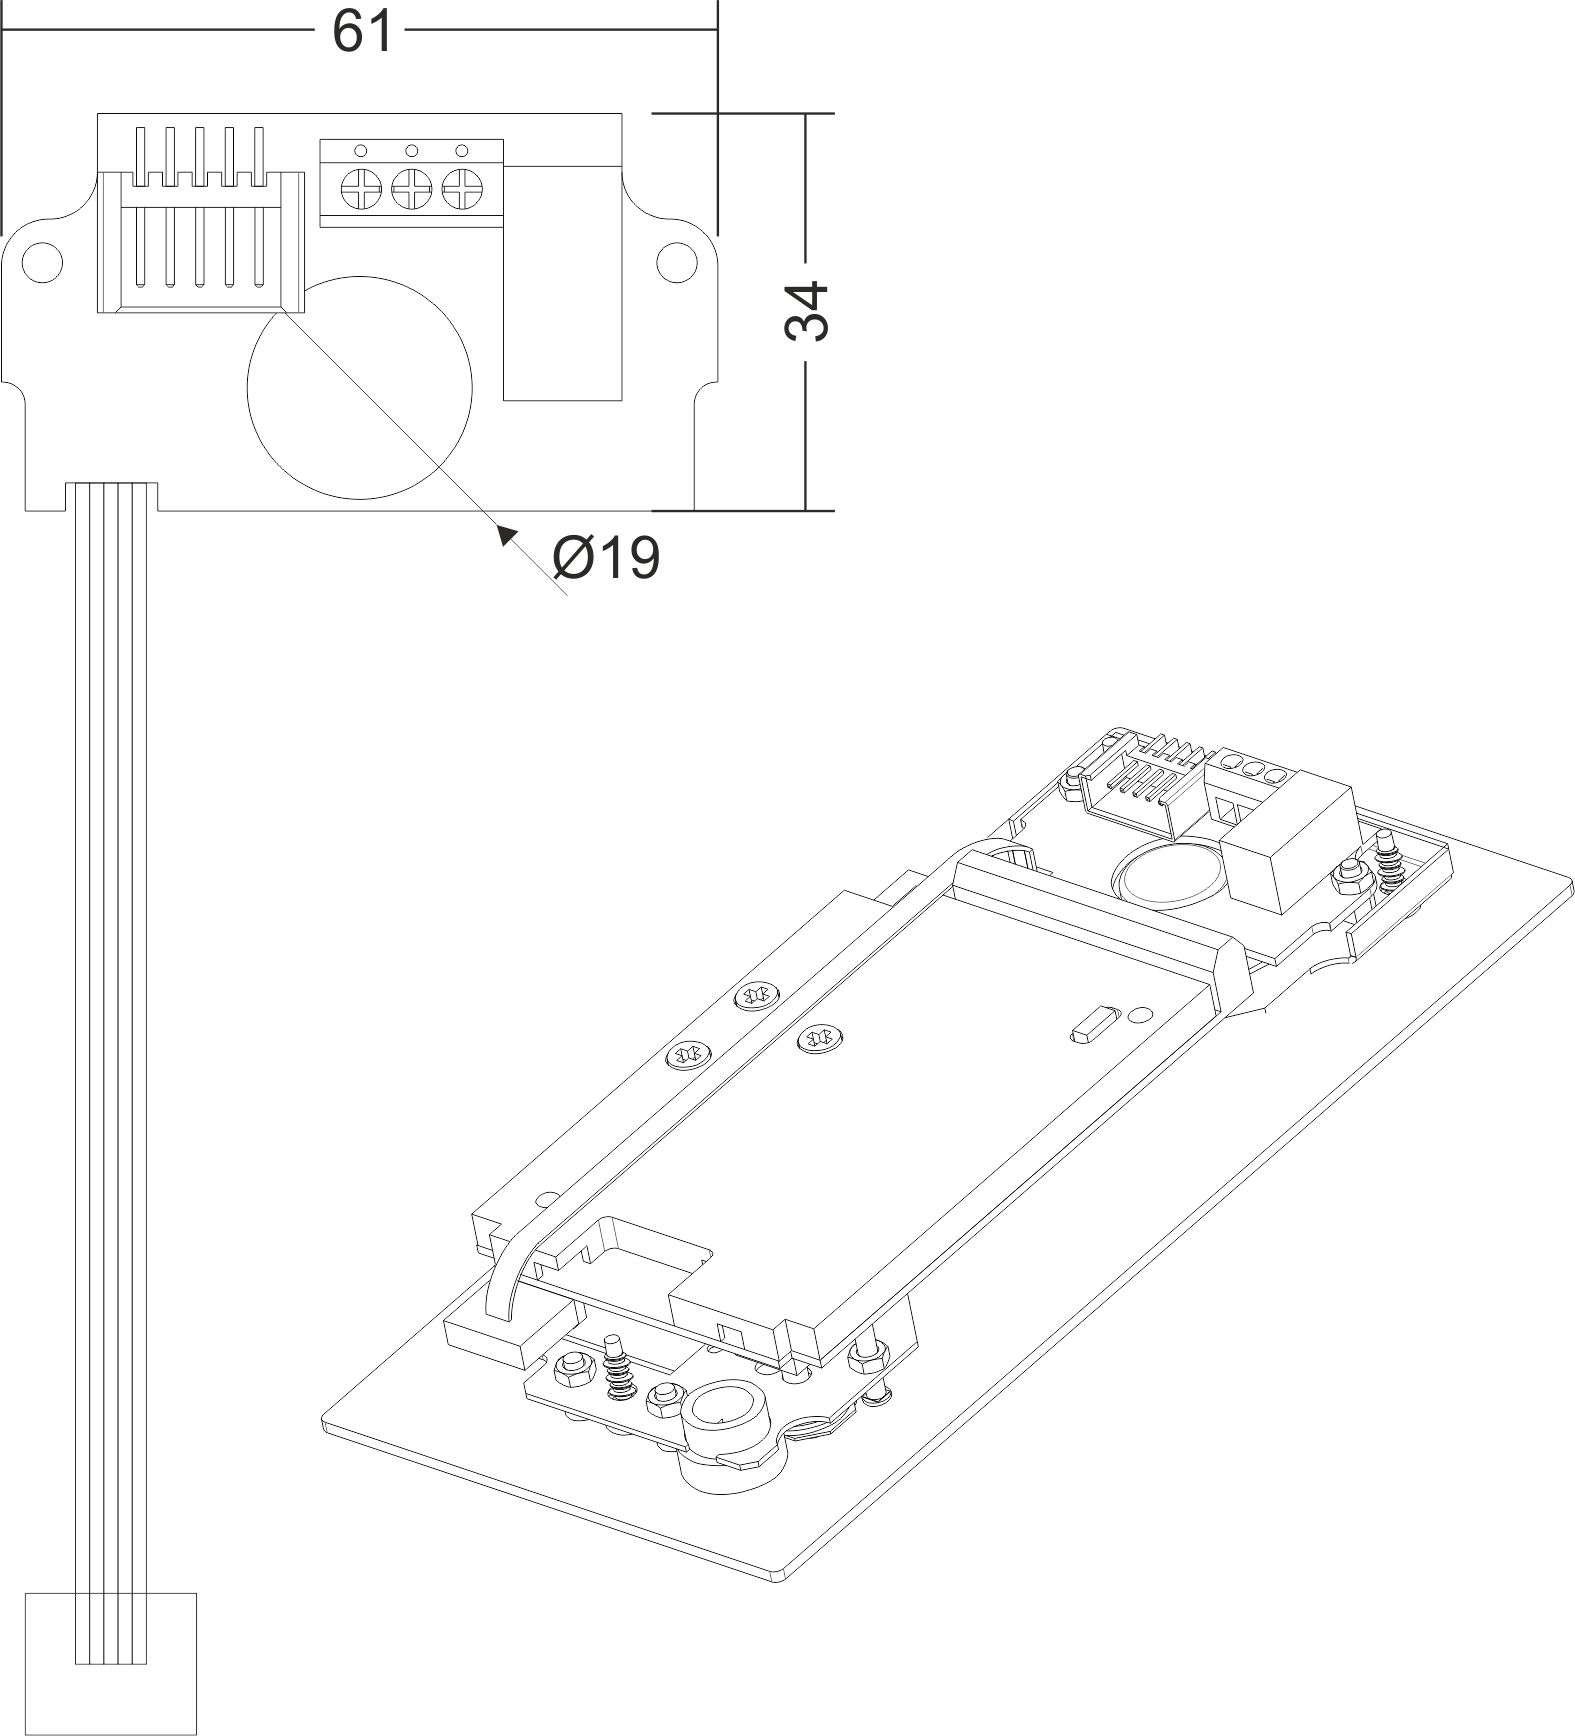 I/O MINI Moduł przekaźnika do sterowania automatyką domową i urządzeniami zewnętrznymi - Wymiary